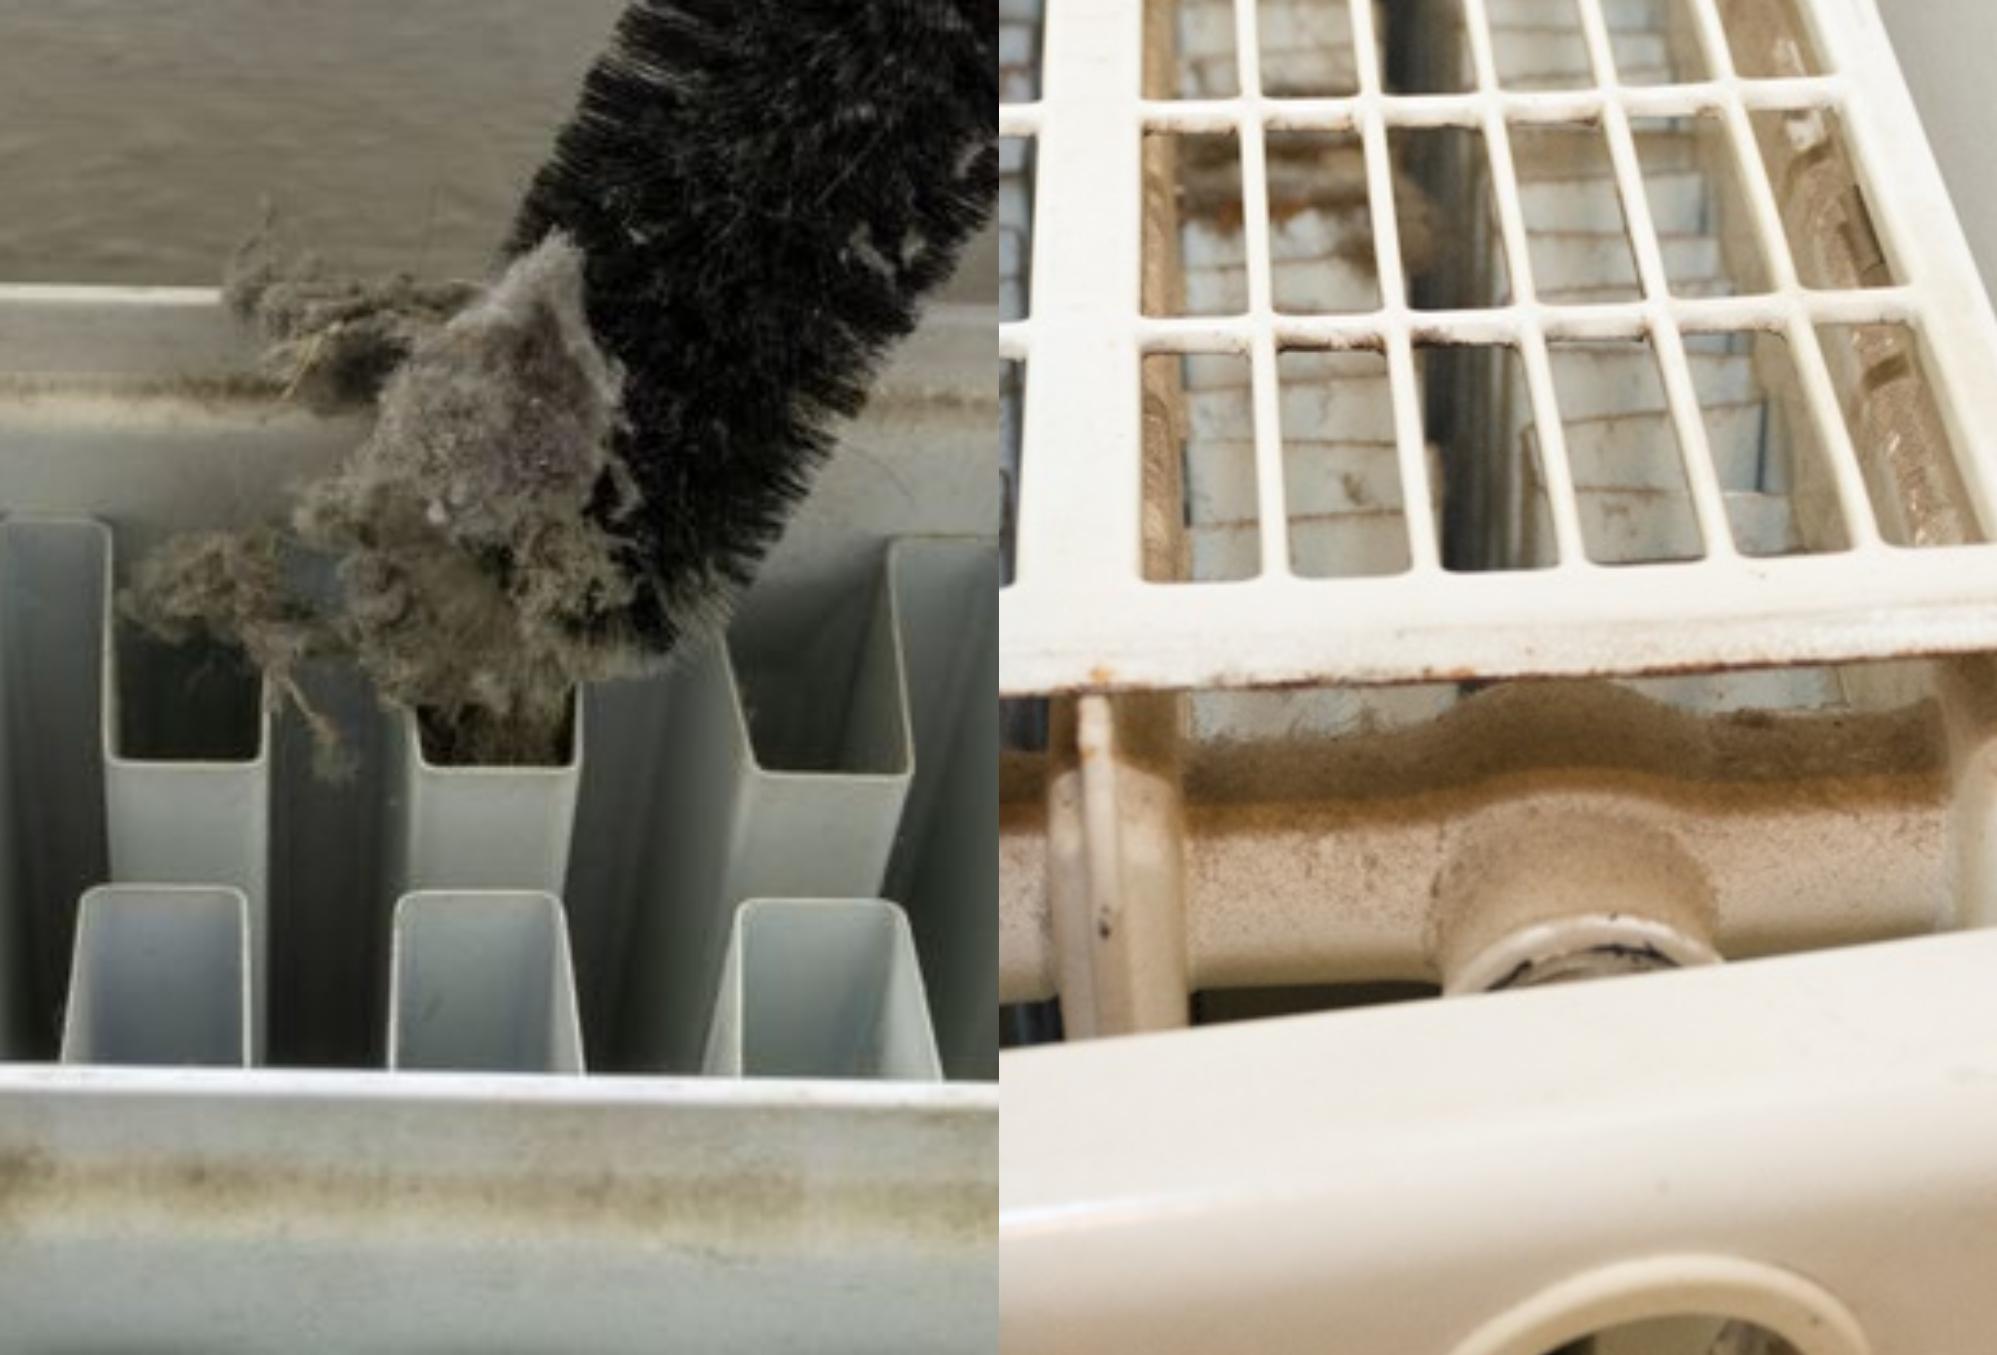 Συσσωρευμένη σκόνη και βρωμιά στα καλοριφέρ: Καθάρισε τα σε βάθος για αποτελεσματική θέρμανση